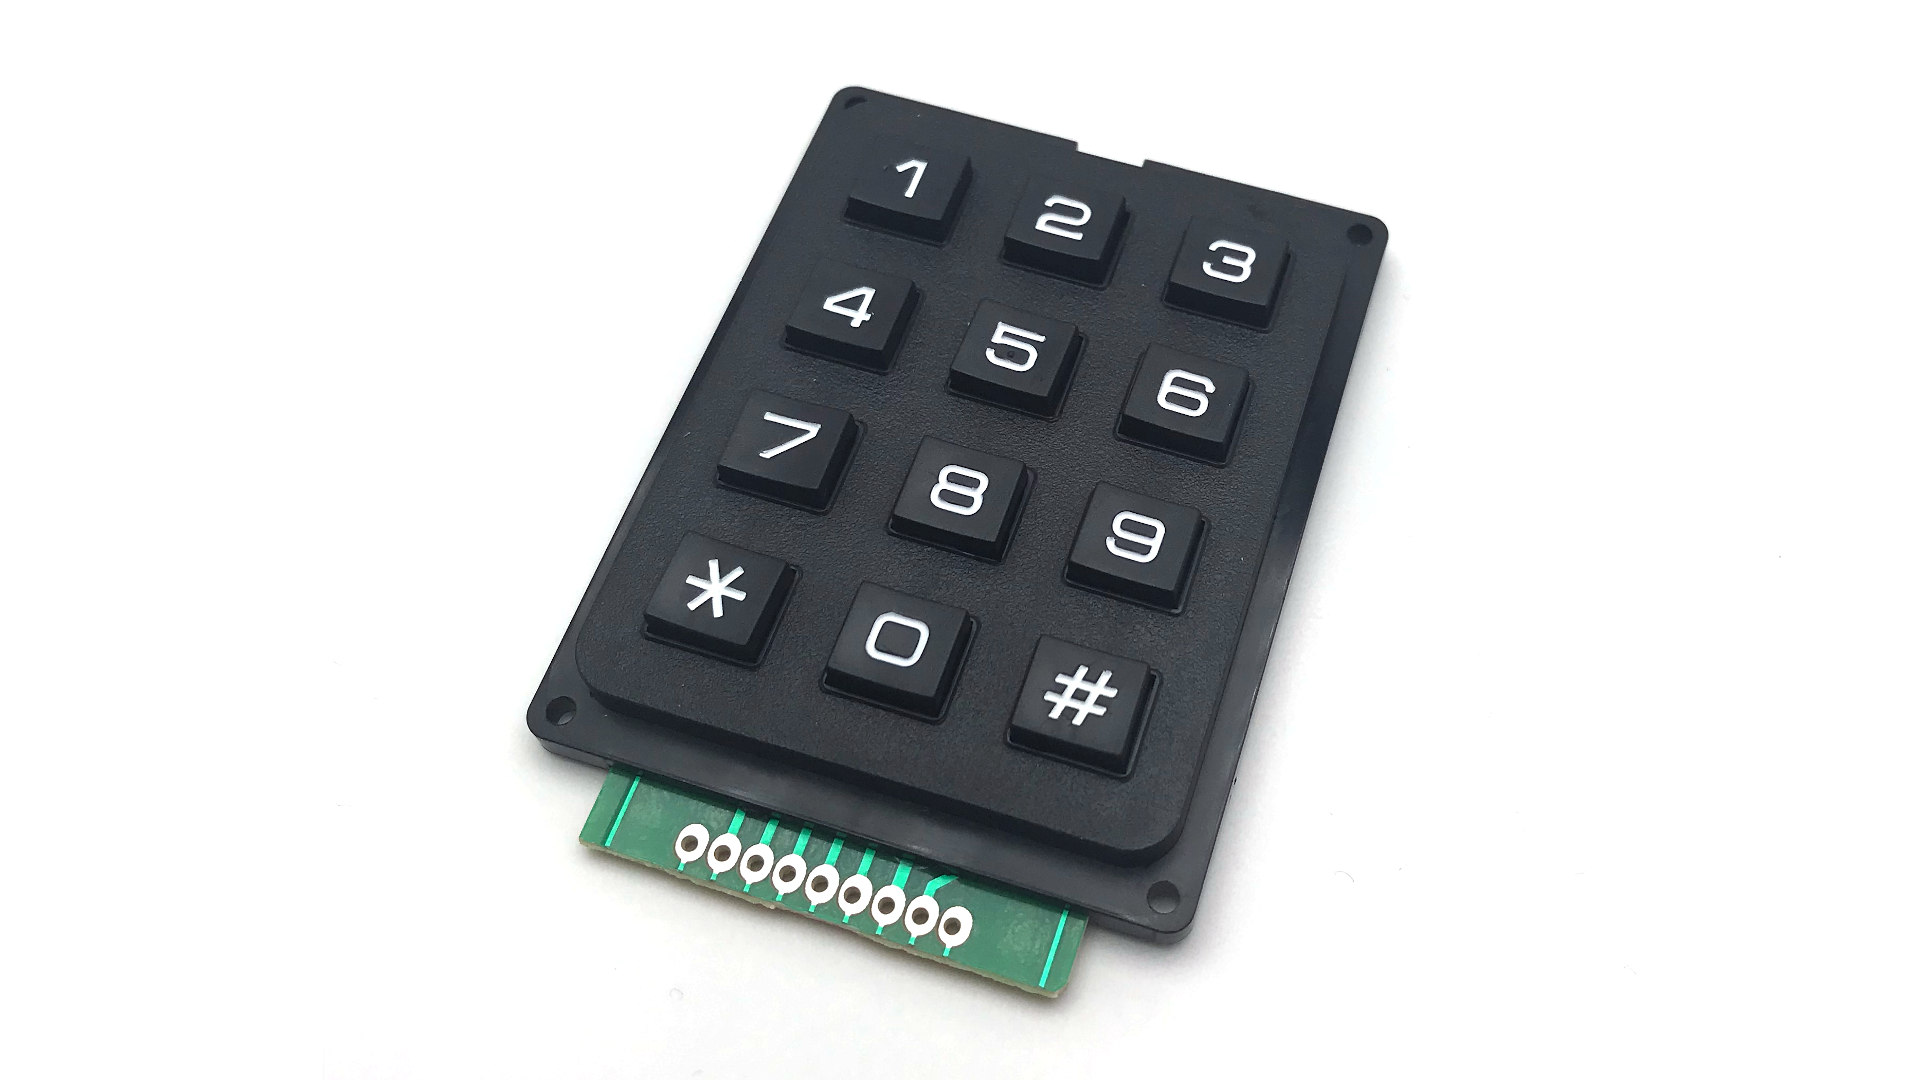 Nettigo: Black numeric keypad